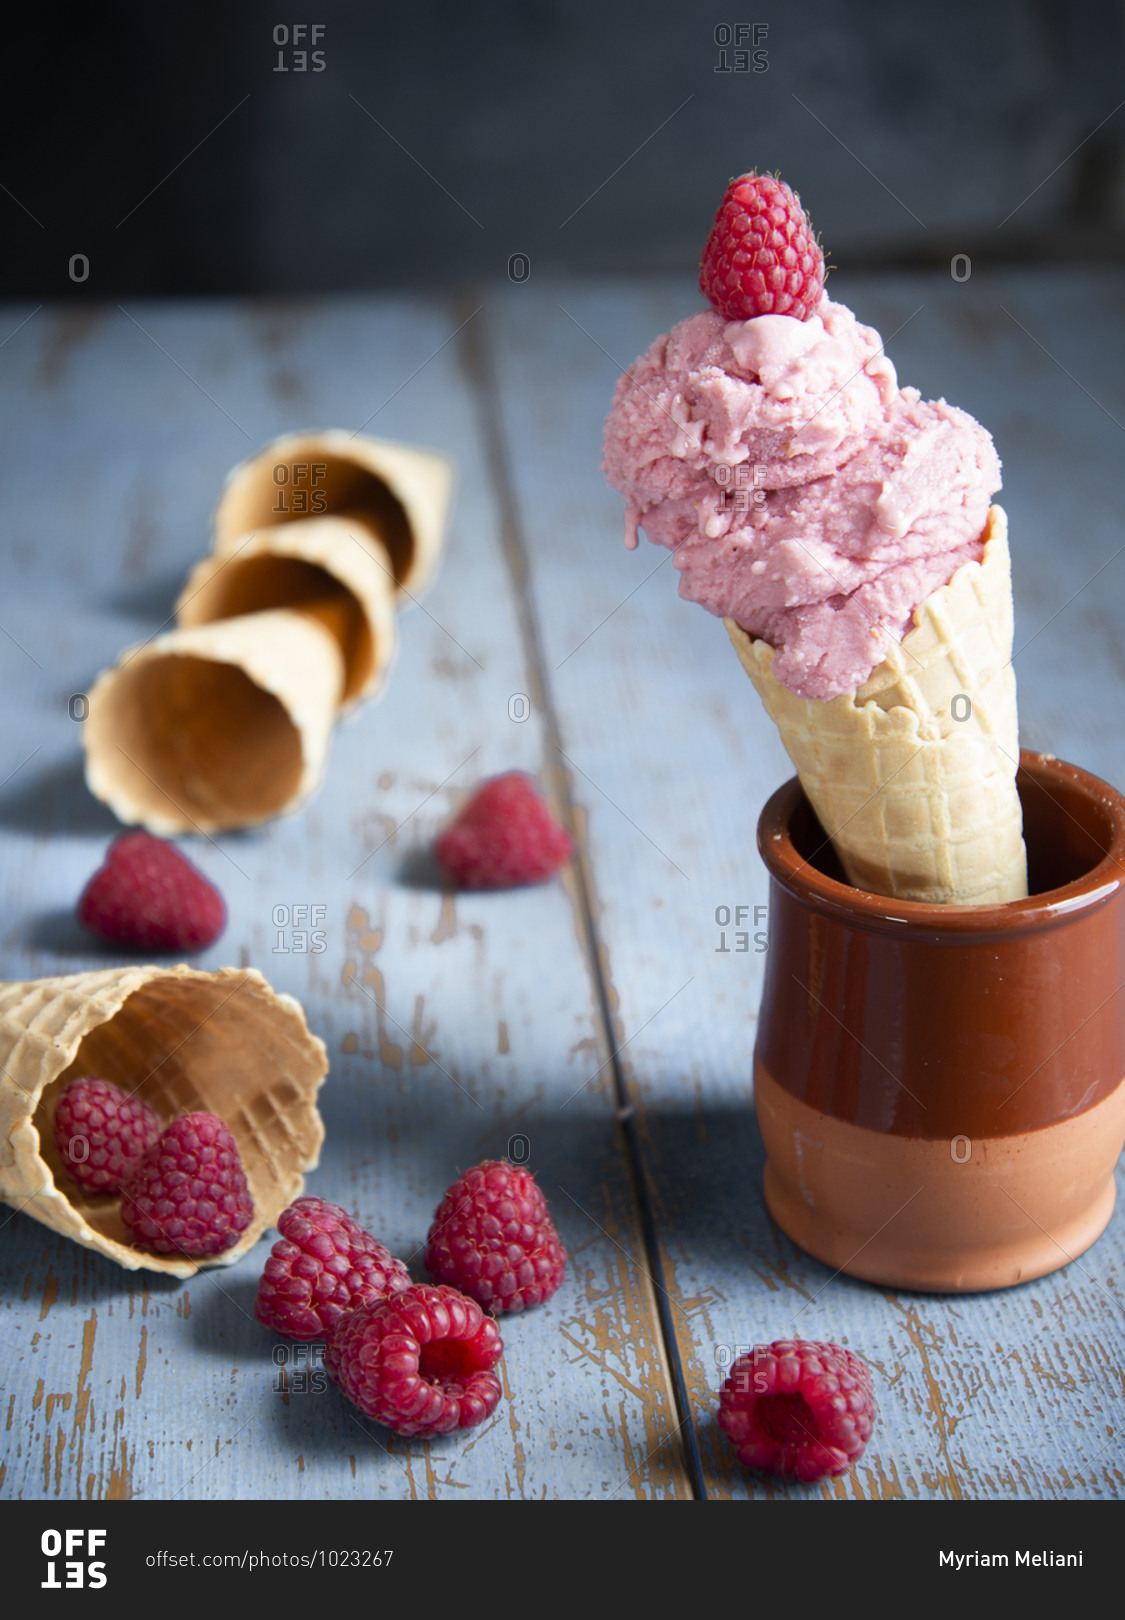 Raspberry ice cream in a waffle cone with fresh raspberries